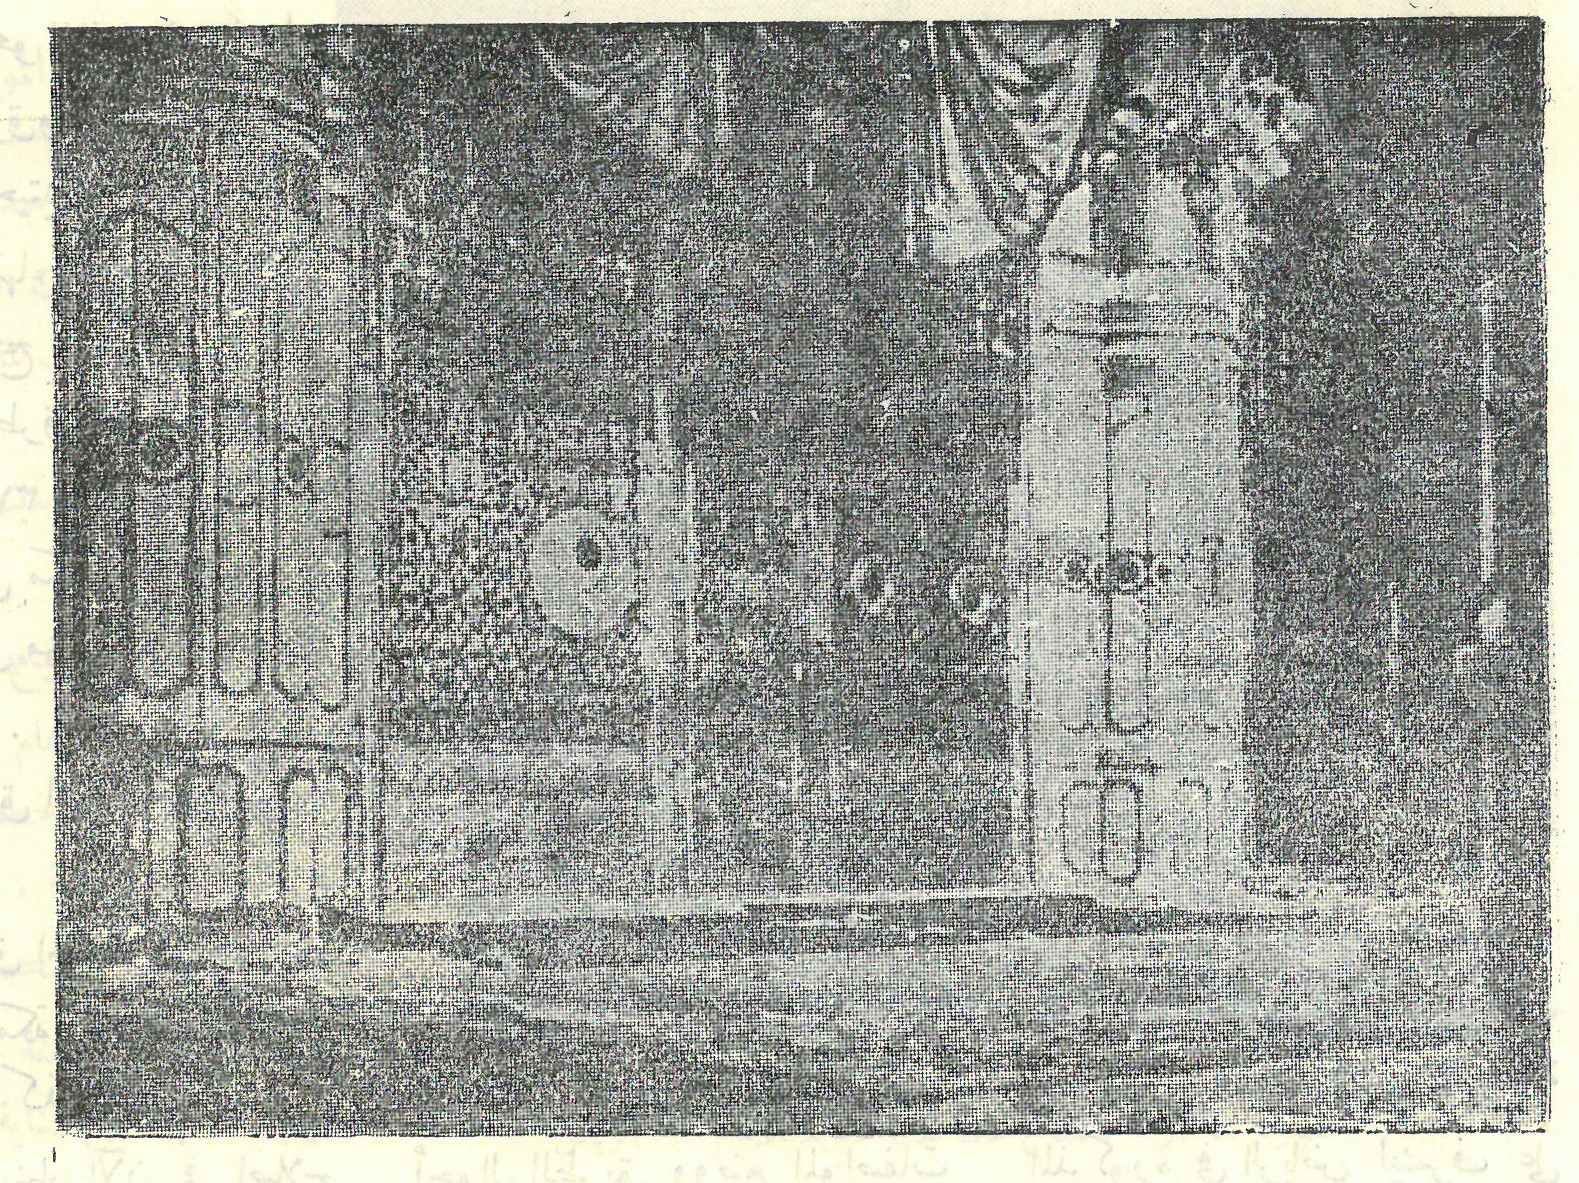 The Prophet's grave in 1954